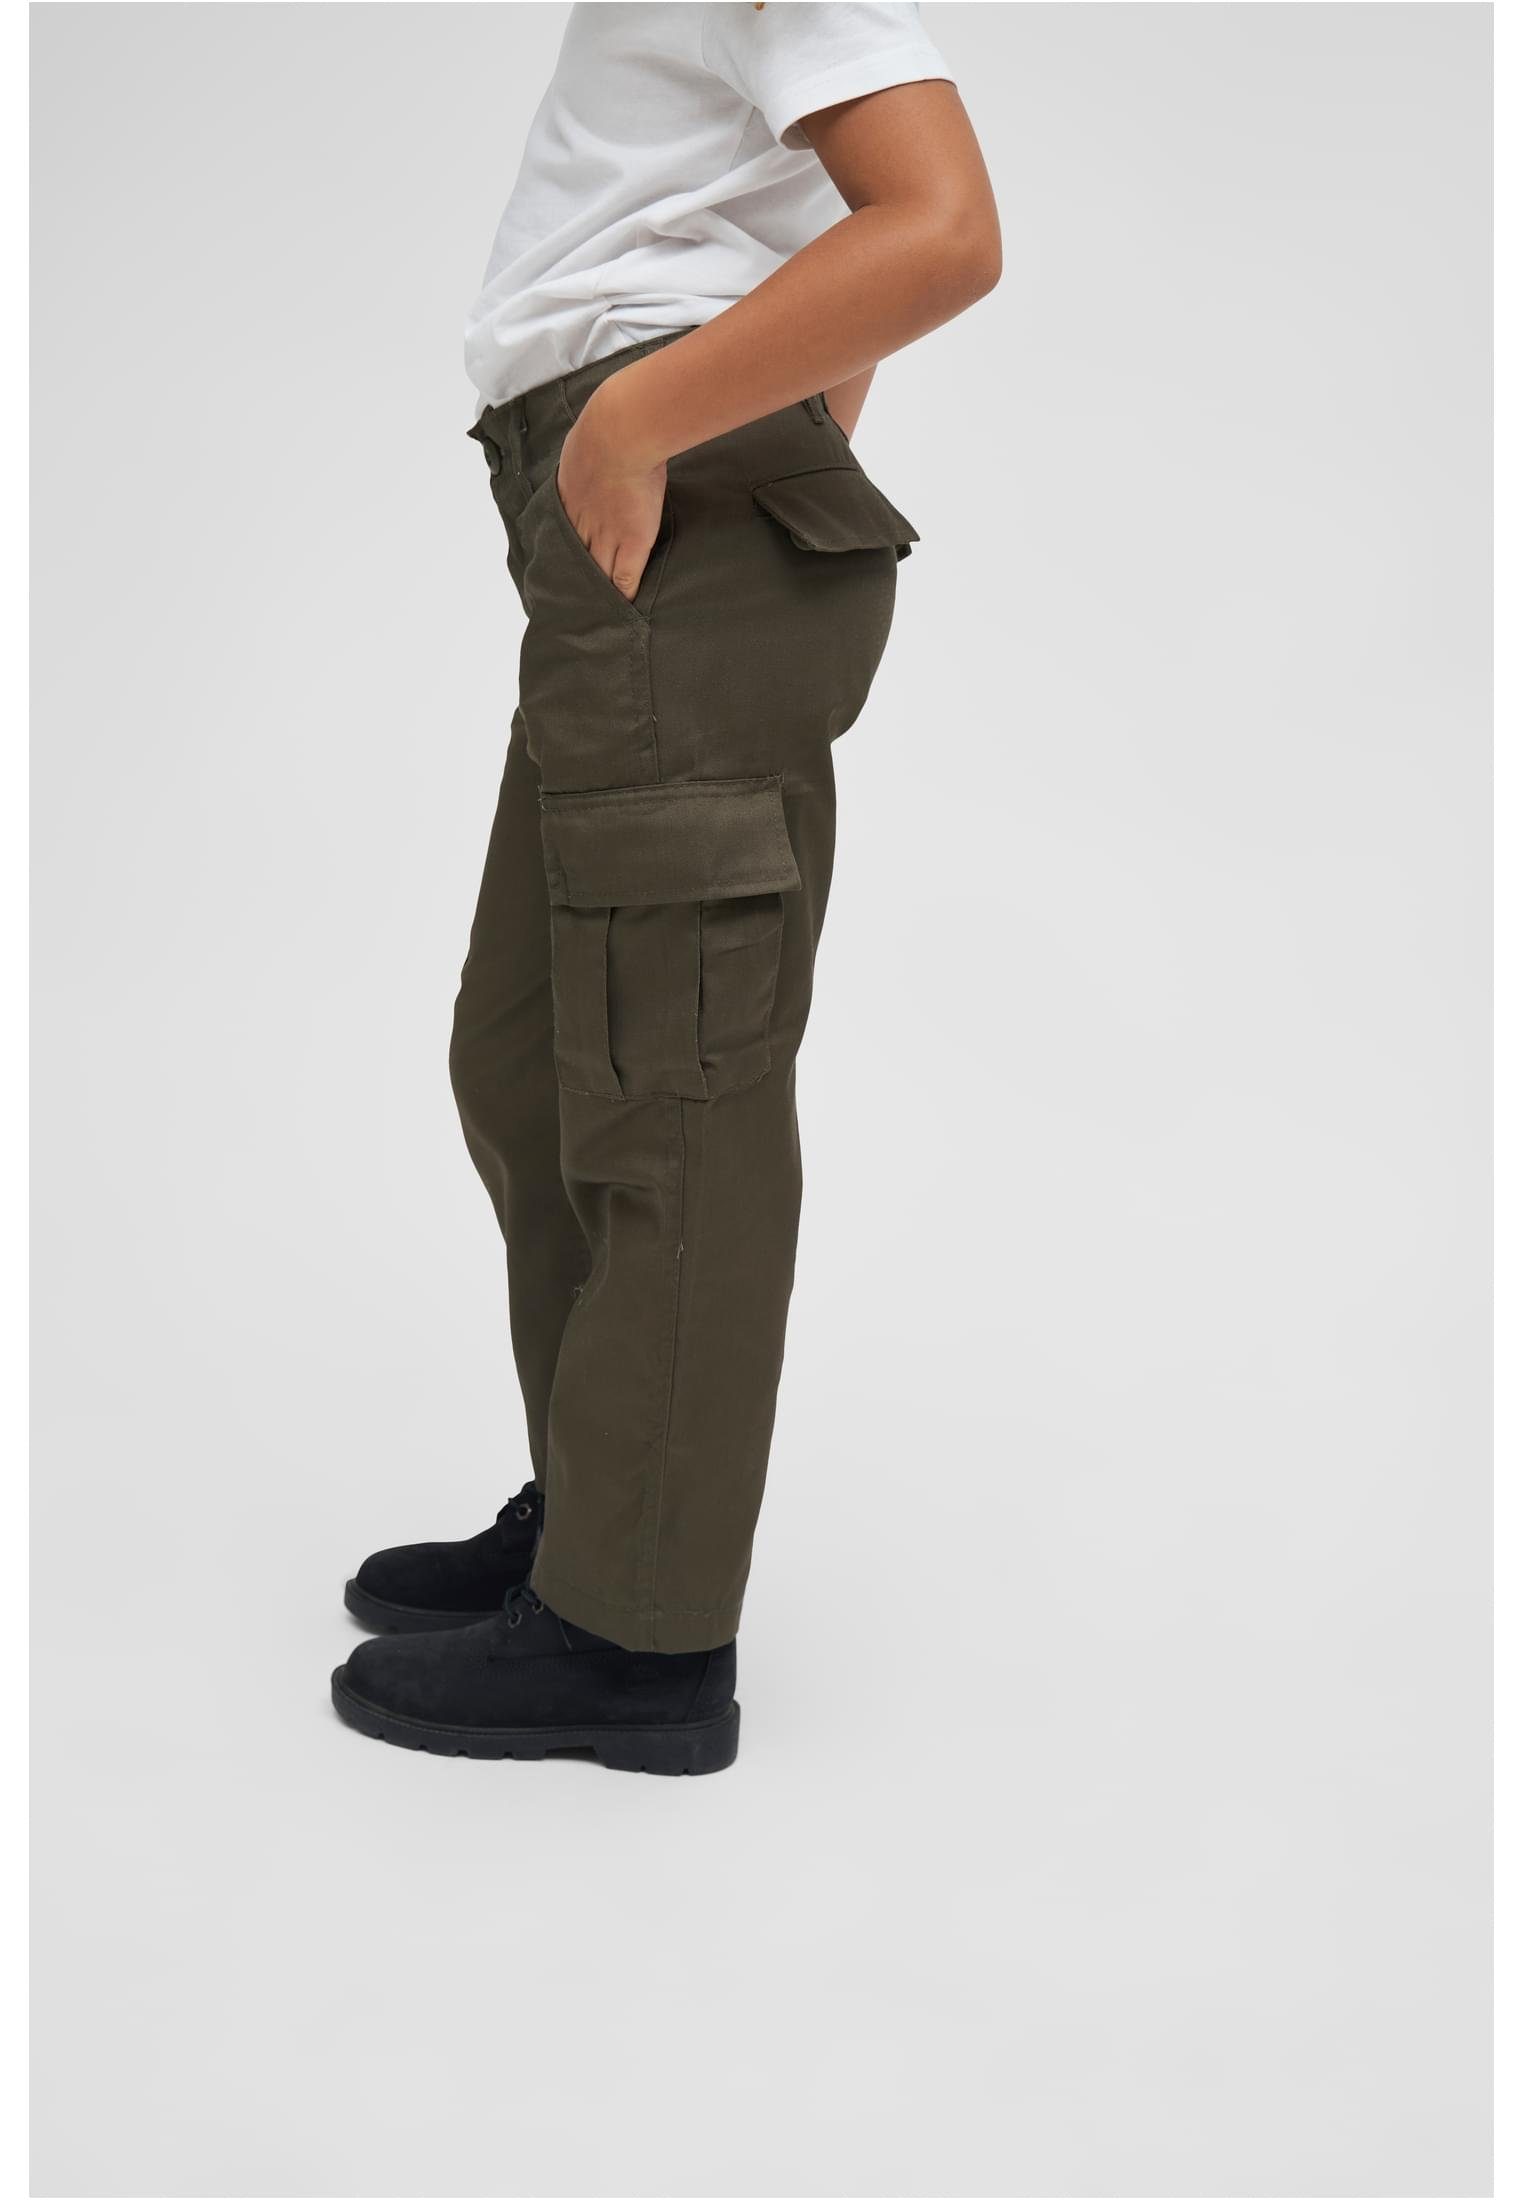 Herren (1-tlg) US Cargohose Brandit olive Ranger Kids Trouser